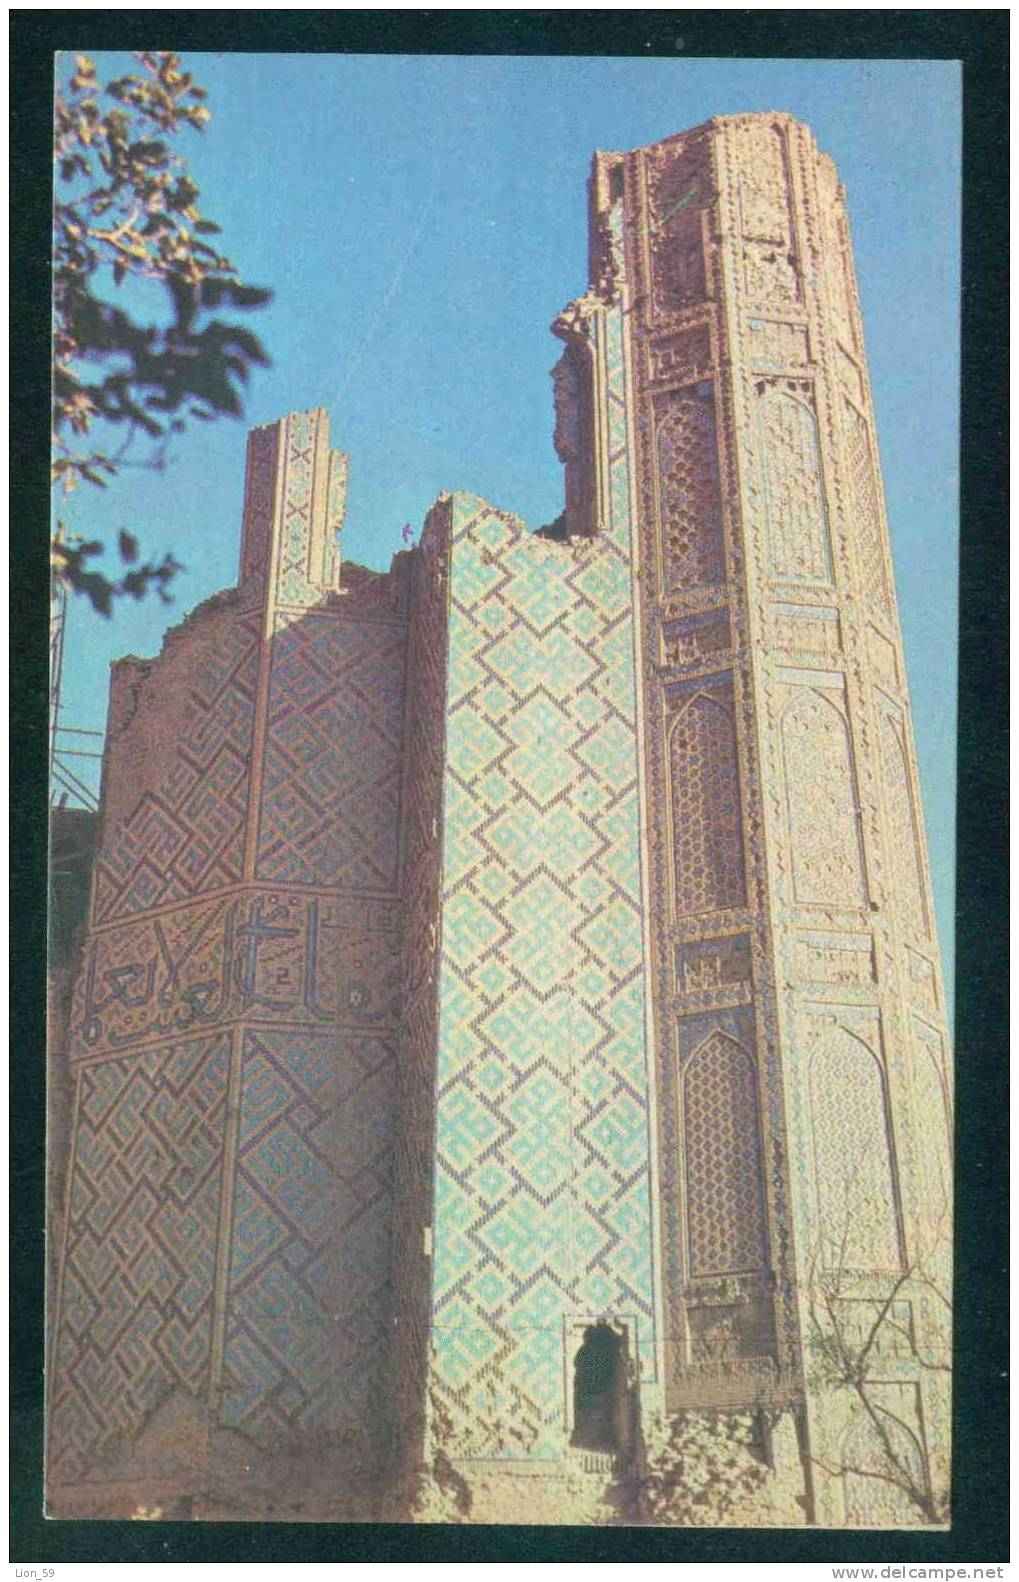 Samarkand / Samarcande - BIBIKHANYM / A FRAGMENT OF THE PORTAL / - Uzbekistan Ouzbékistan 108102 - Ouzbékistan